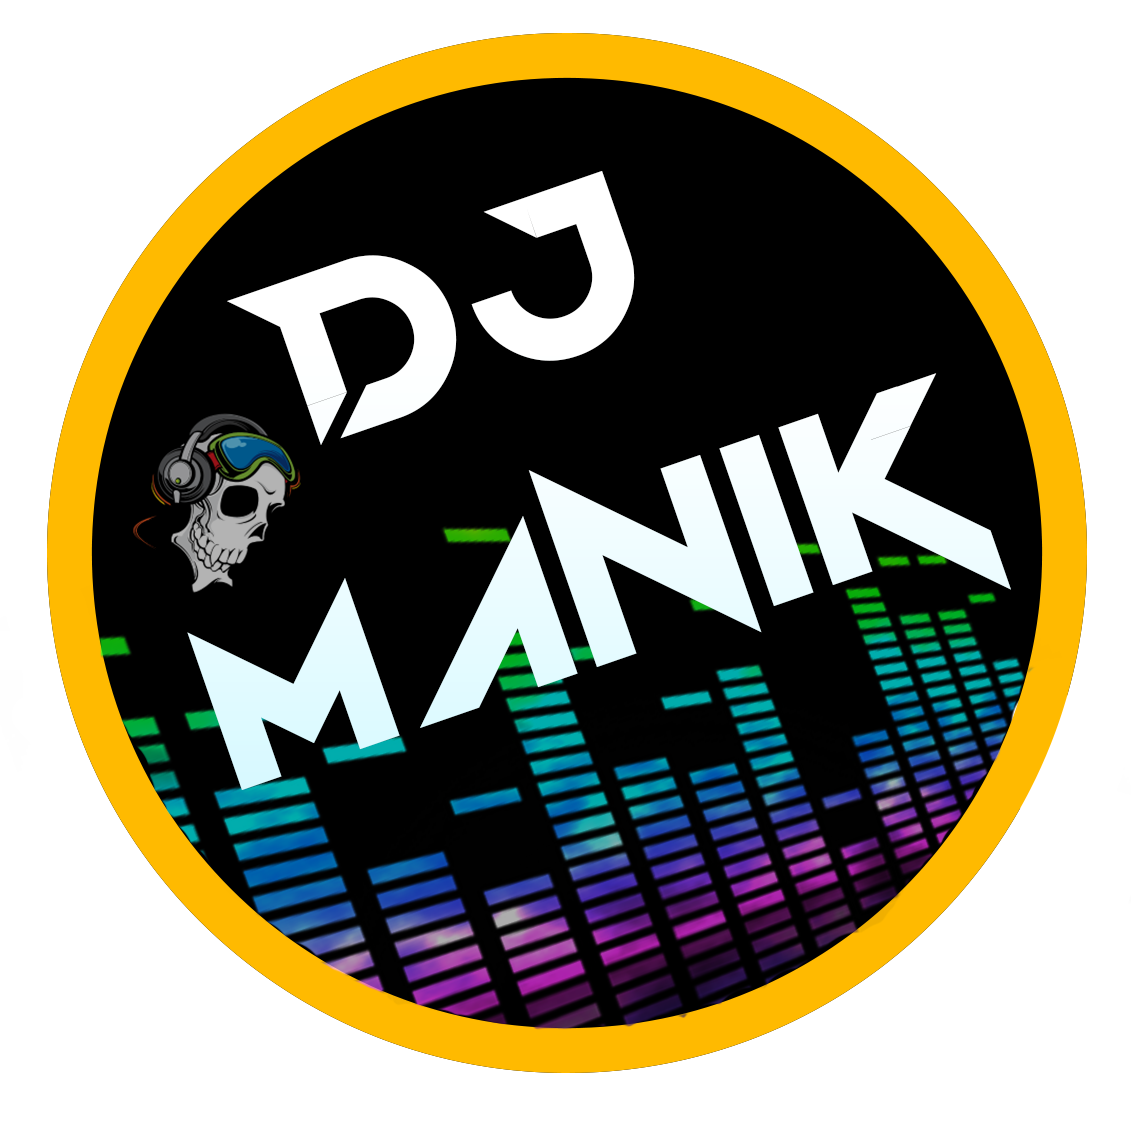 DJ Logo PNG Image HD